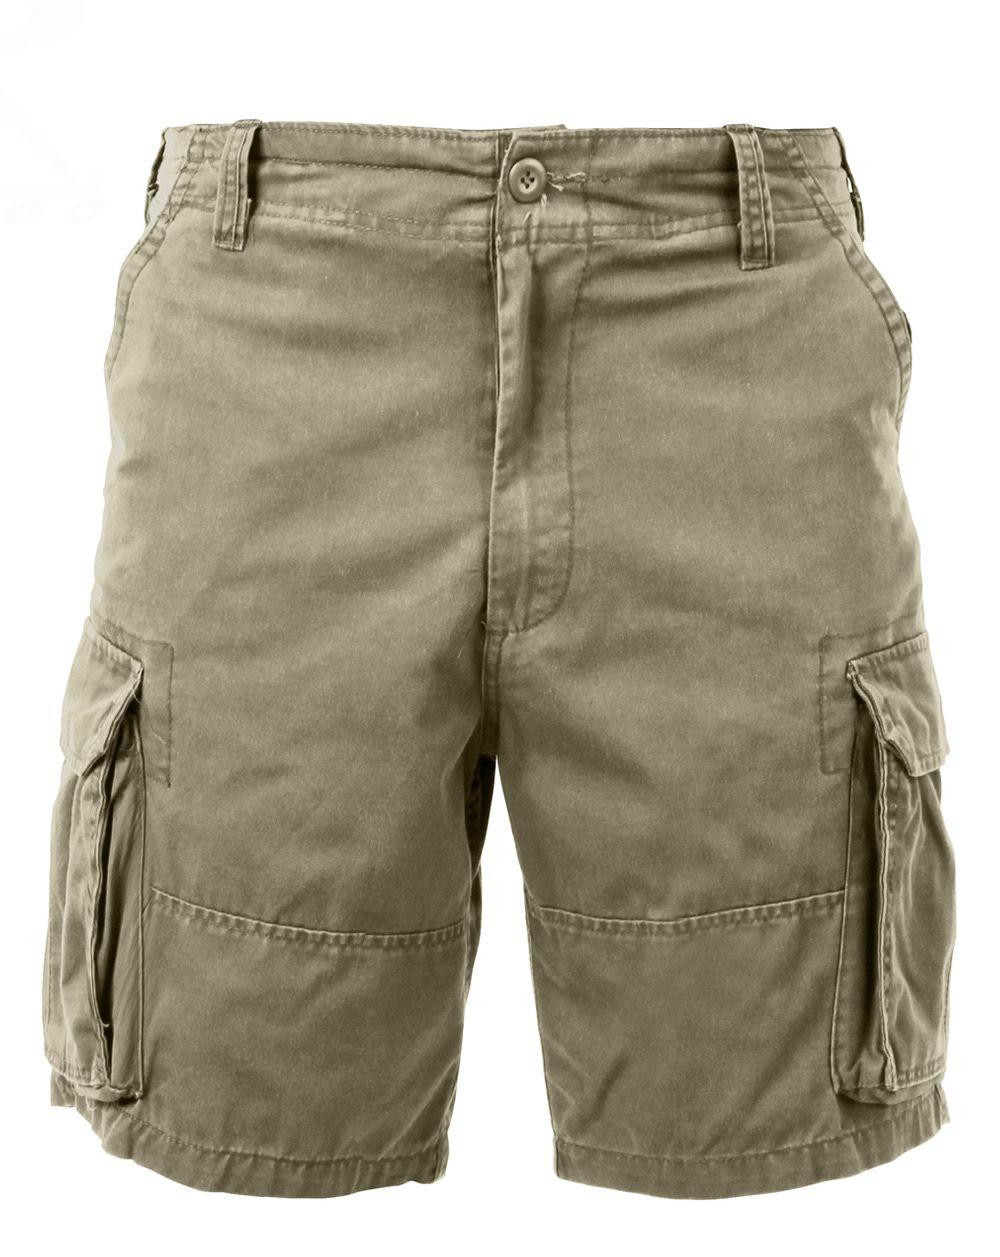 12: Rothco Cargo shorts (Khaki, S)